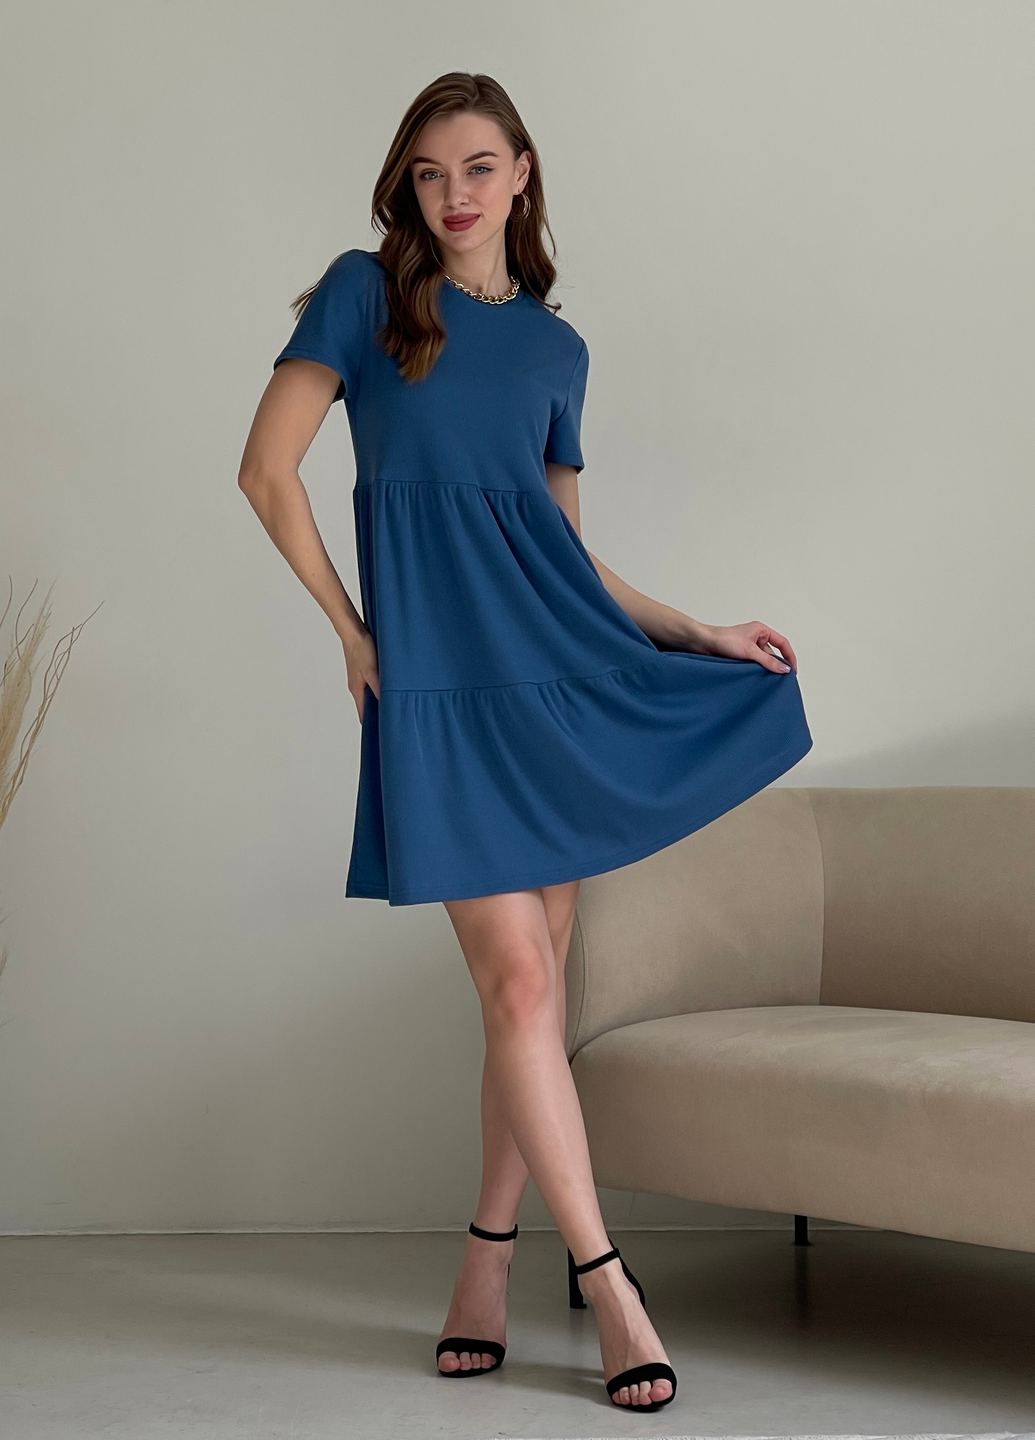 Купить Свободное платье трапеция миди синее Merlini Маркони 700001231 размер 42-44 (S-M) в интернет-магазине